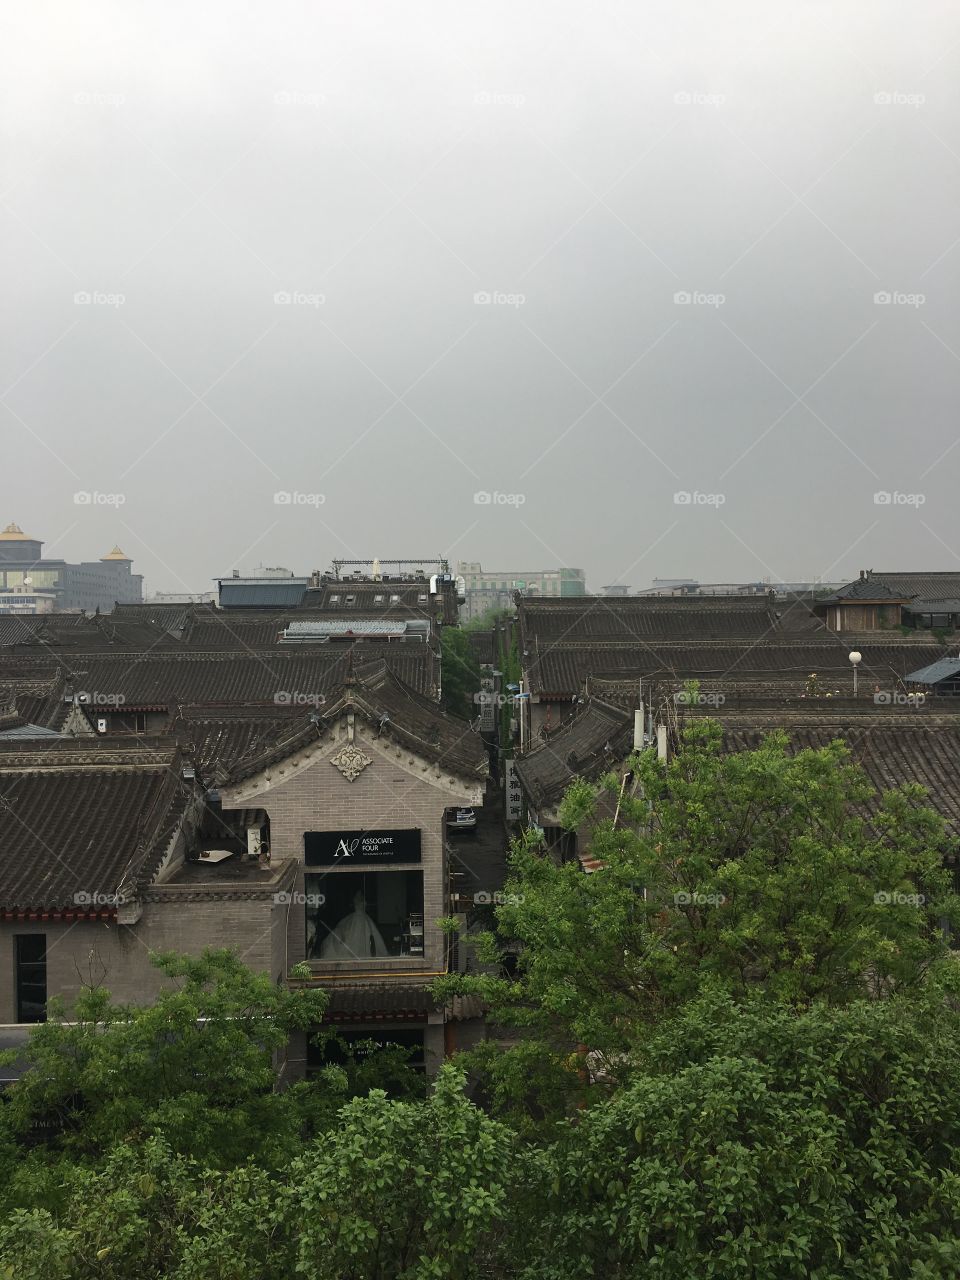 Xi’an, China